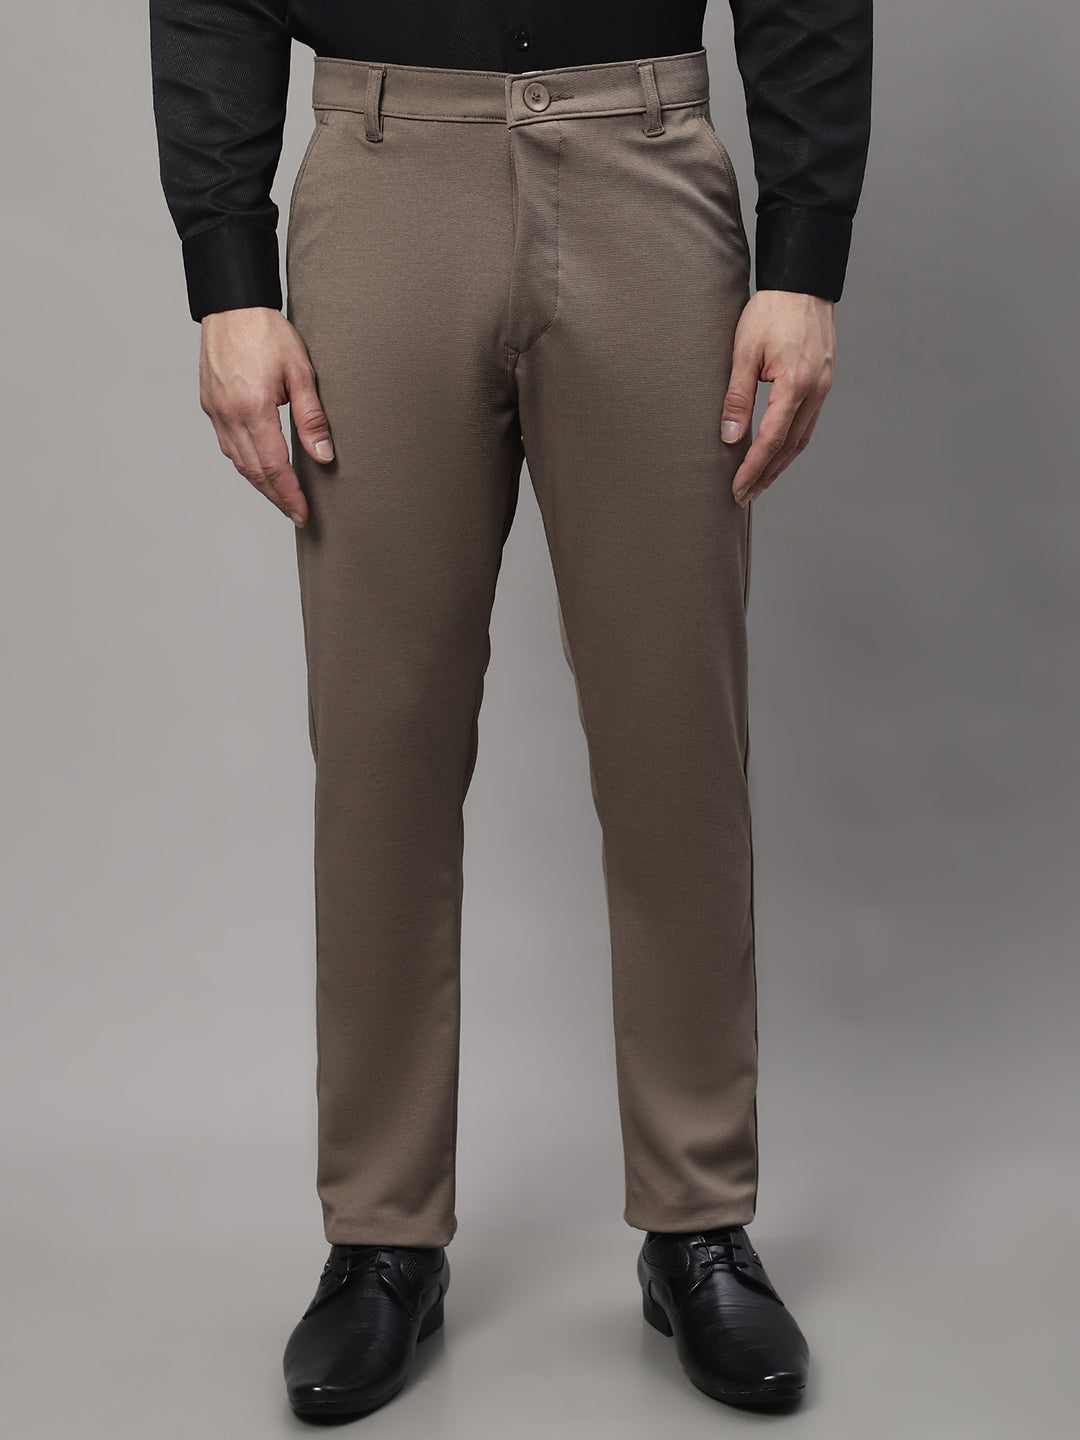 Medium Grey Solid Full Length Formal Men Ultra Slim Fit Trousers - Selling  Fast at Pantaloons.com